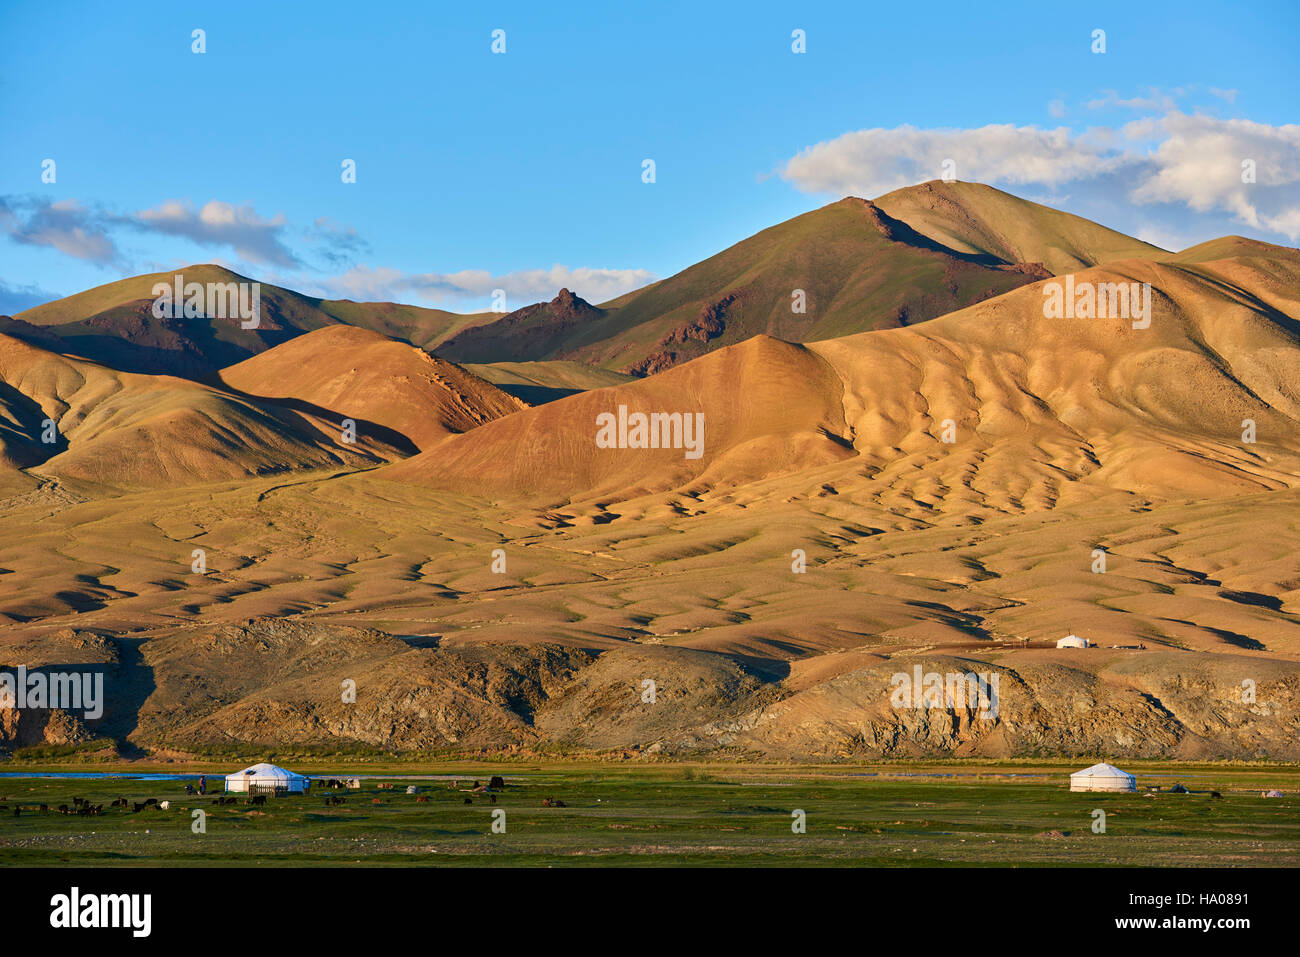 La Mongolie, Bayan-Ulgii province, l'ouest de la Mongolie, les montagnes colorées de l'Altay, camp nomade du peuple kazakh Banque D'Images